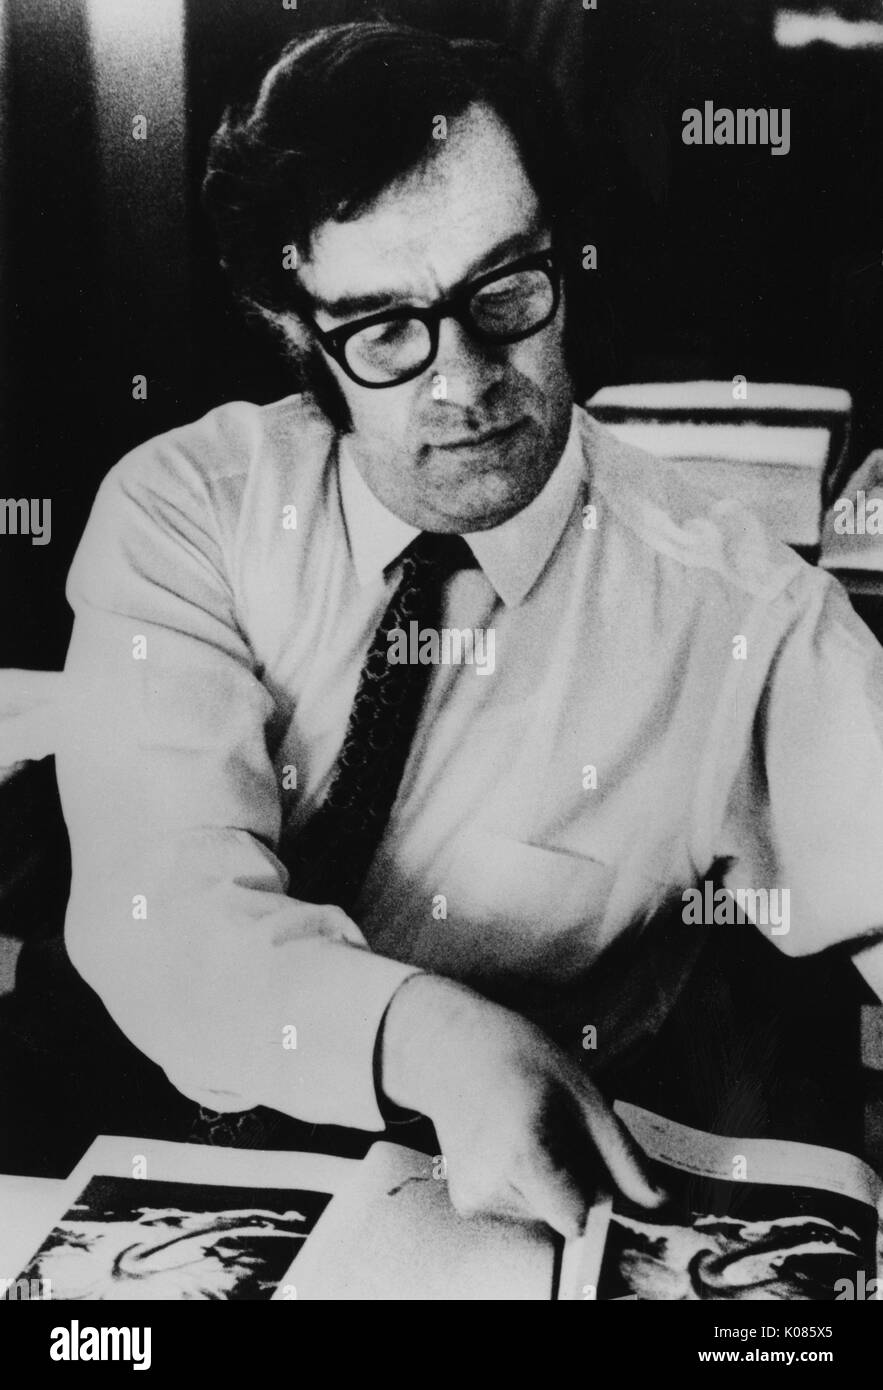 Brustbild von Autor Isaac Asimov, ein weißes Hemd, Sitzen über eine Tabelle, indem Sie durch Seiten eines Buches, Brille und eine gemusterte Krawatte, mit einem ernsten Gesichtsausdruck, 1970. Stockfoto